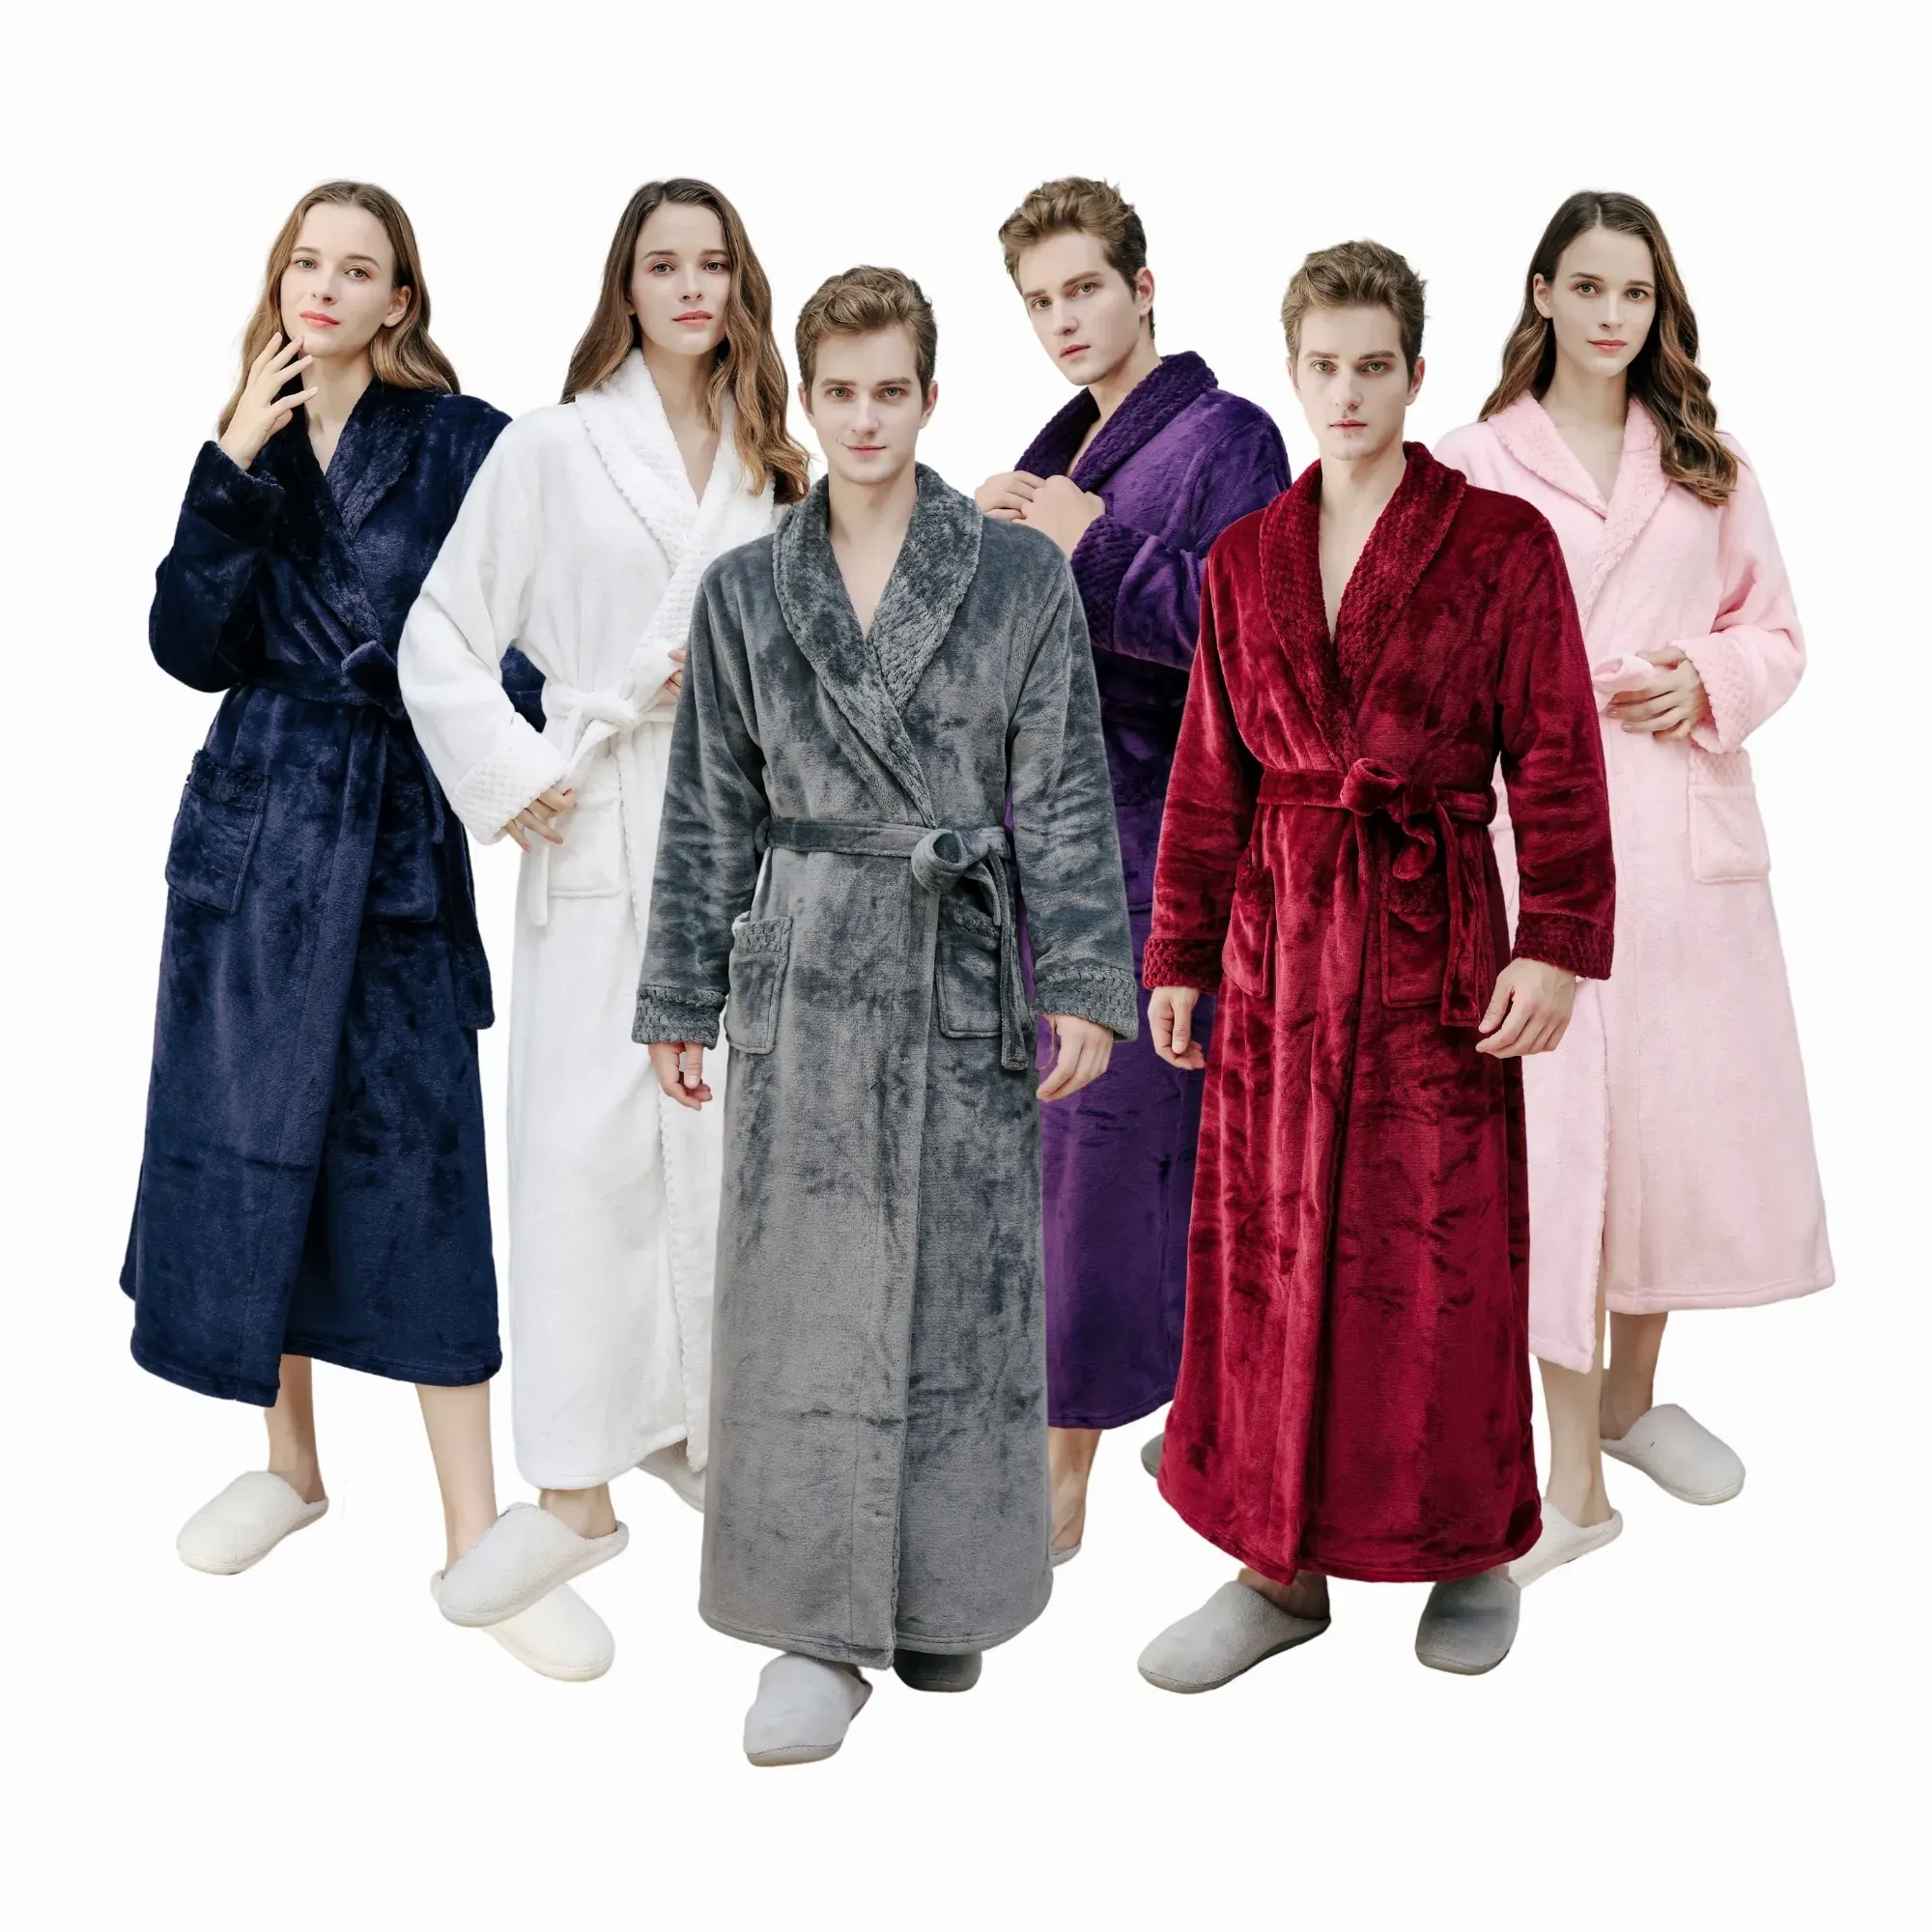 Robes - Australia Promo Now